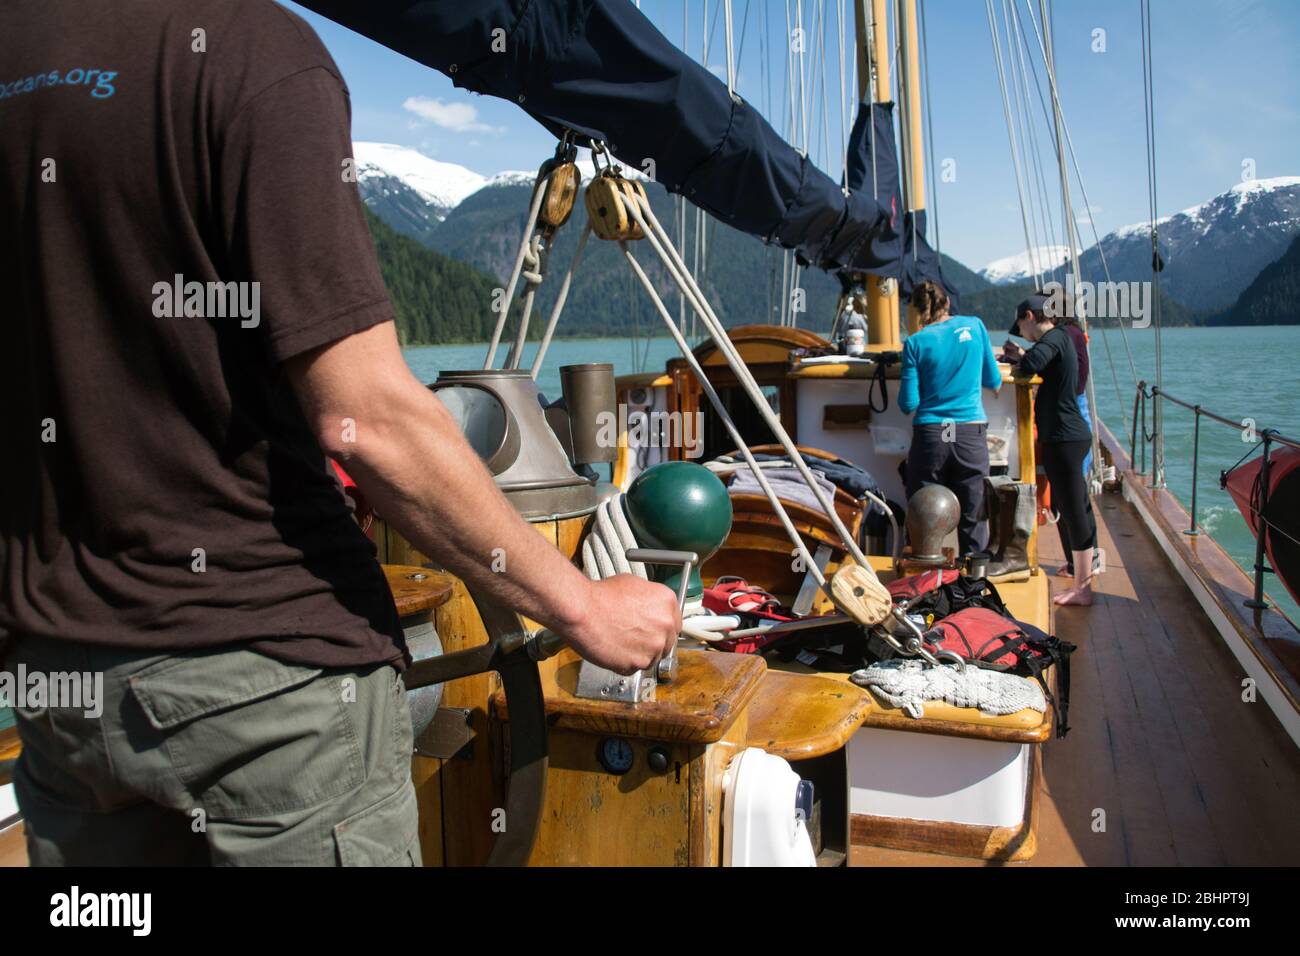 L'équipage et les passagers d'une goélette écotouristique dans les eaux côtières de la forêt tropicale de Great Bear, dans le nord de la Colombie-Britannique, au Canada. Banque D'Images